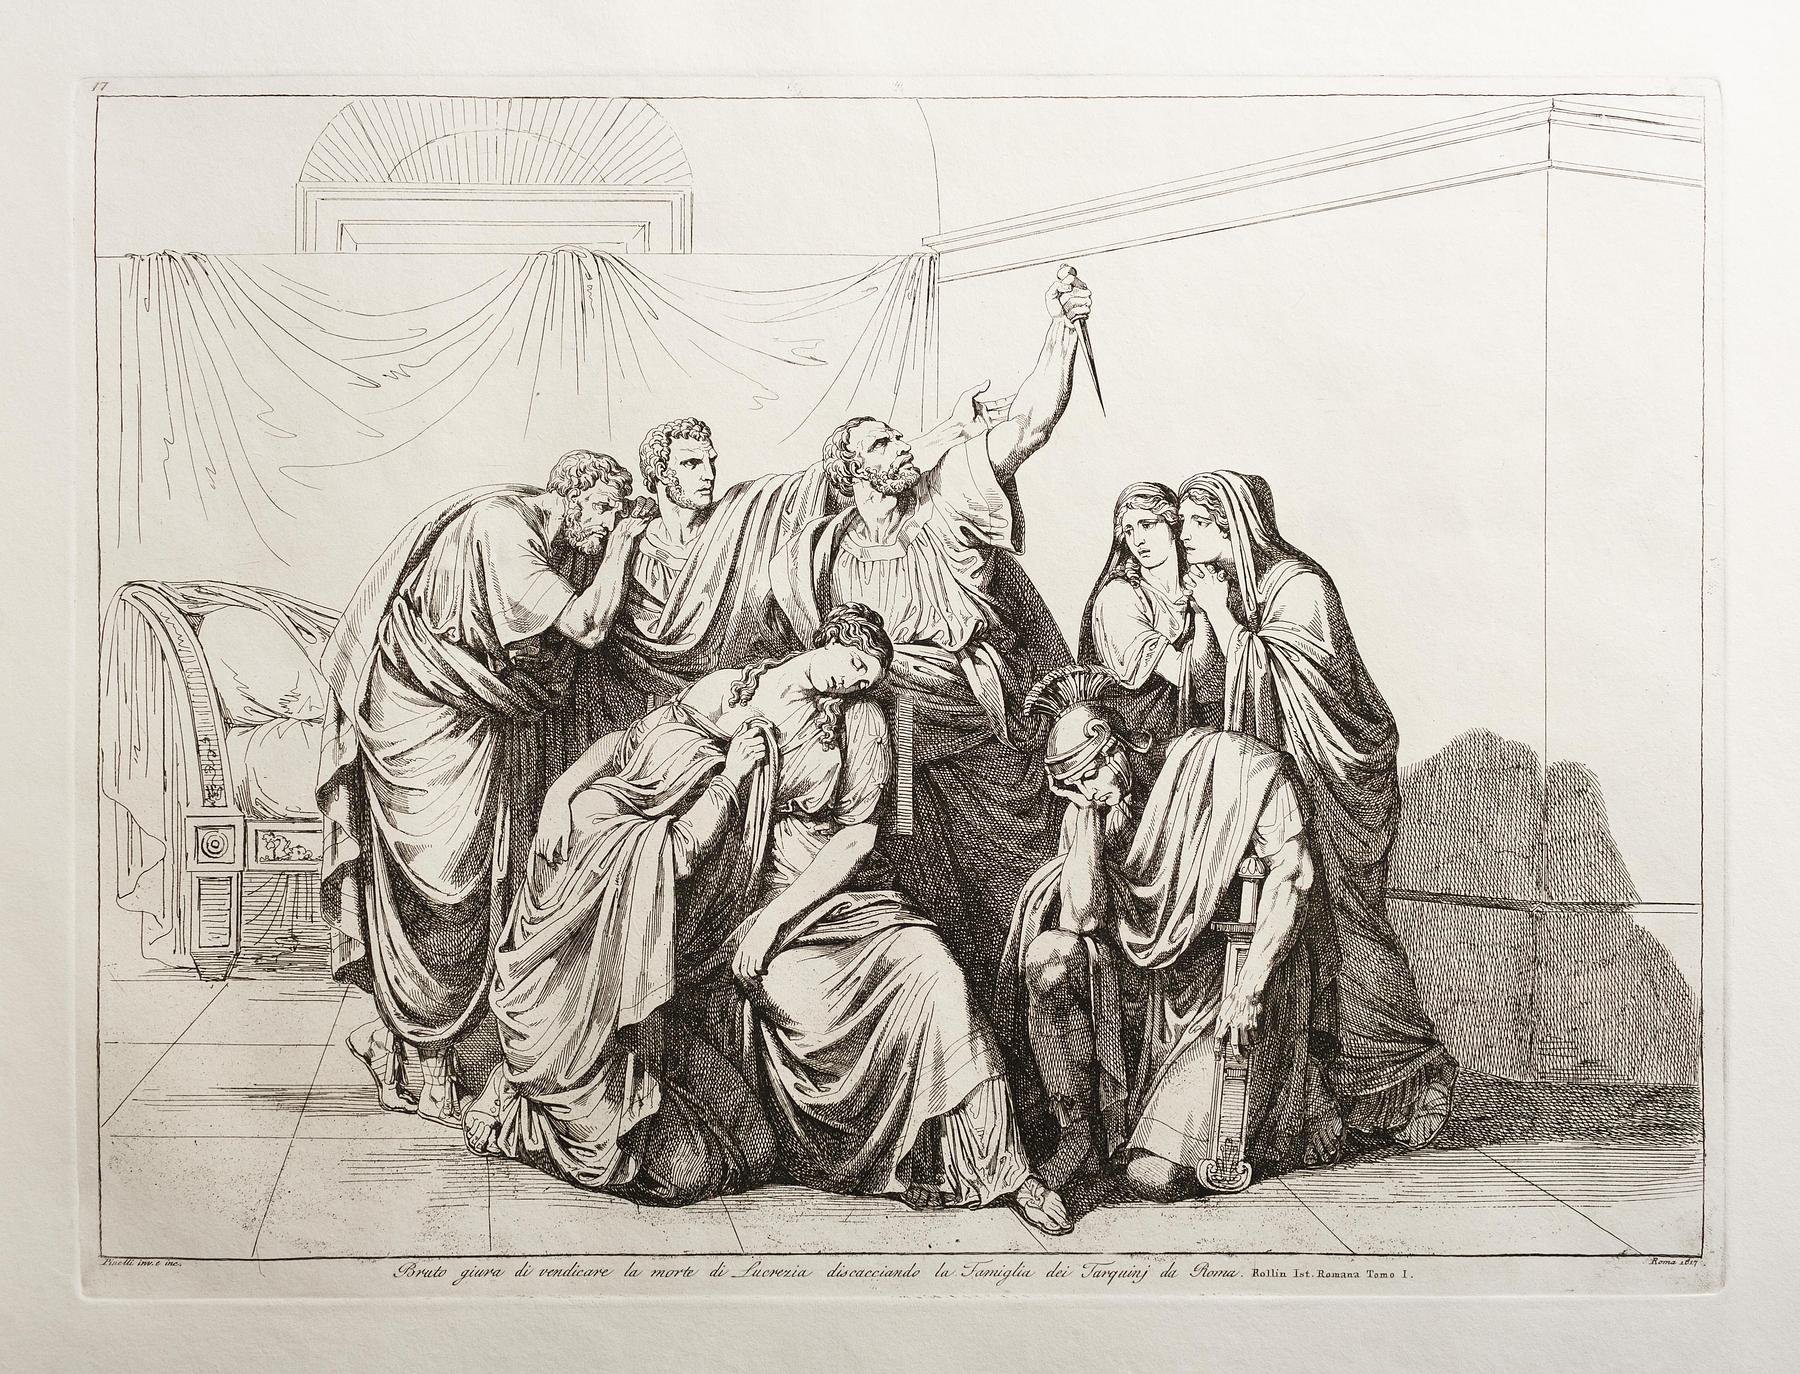 Brutus sværger at hævne drabet på Lucretia og forvise Tarquini-familien fra Rom, E943,18